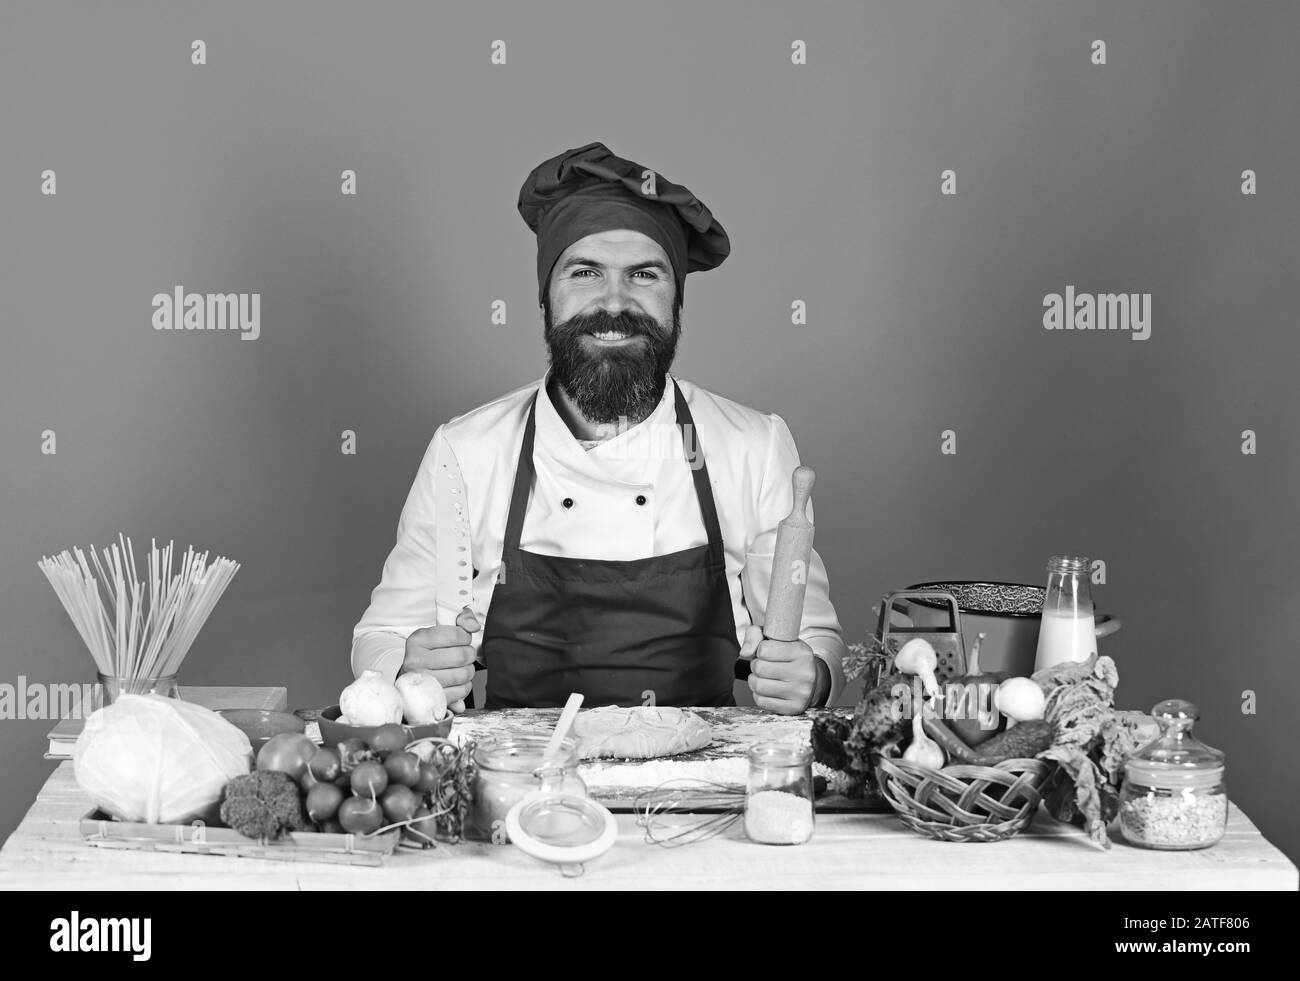 Chef avec pâtes, légumes et pâte sur table. Faire cuire avec le sourire en bordeaux en uniforme maintient la goupille et le couteau à rouler. L'homme avec barbe est assis sur un comptoir sur fond rouge. Concept de cuisine maison. Banque D'Images